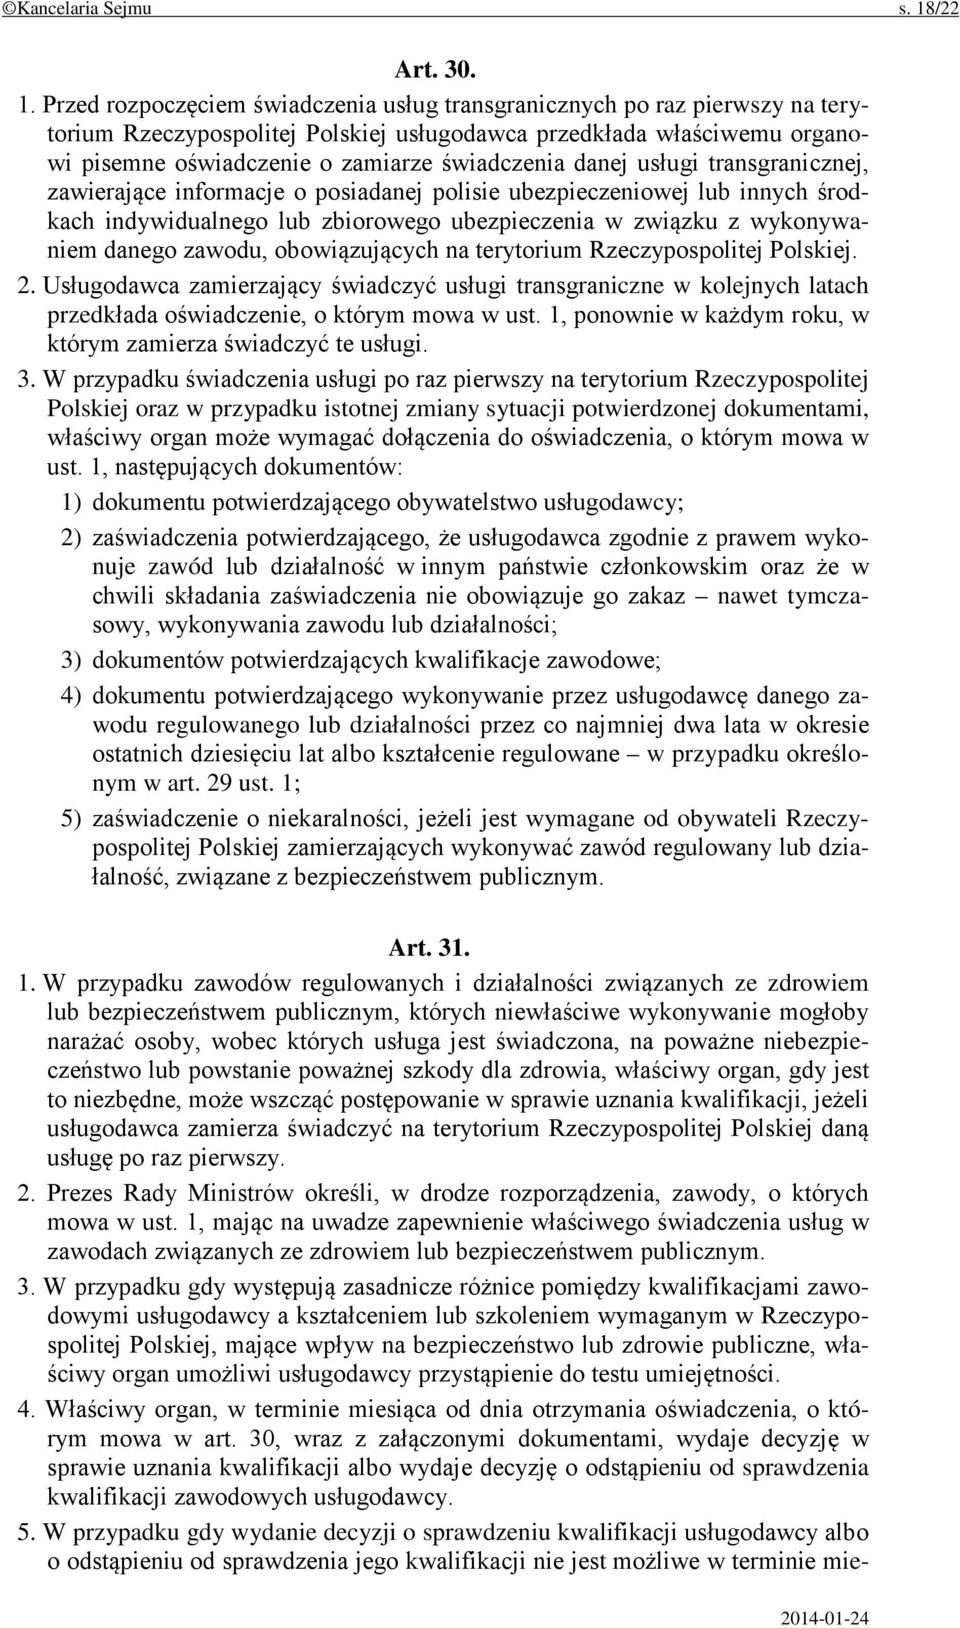 Przed rozpoczęciem świadczenia usług transgranicznych po raz pierwszy na terytorium Rzeczypospolitej Polskiej usługodawca przedkłada właściwemu organowi pisemne oświadczenie o zamiarze świadczenia